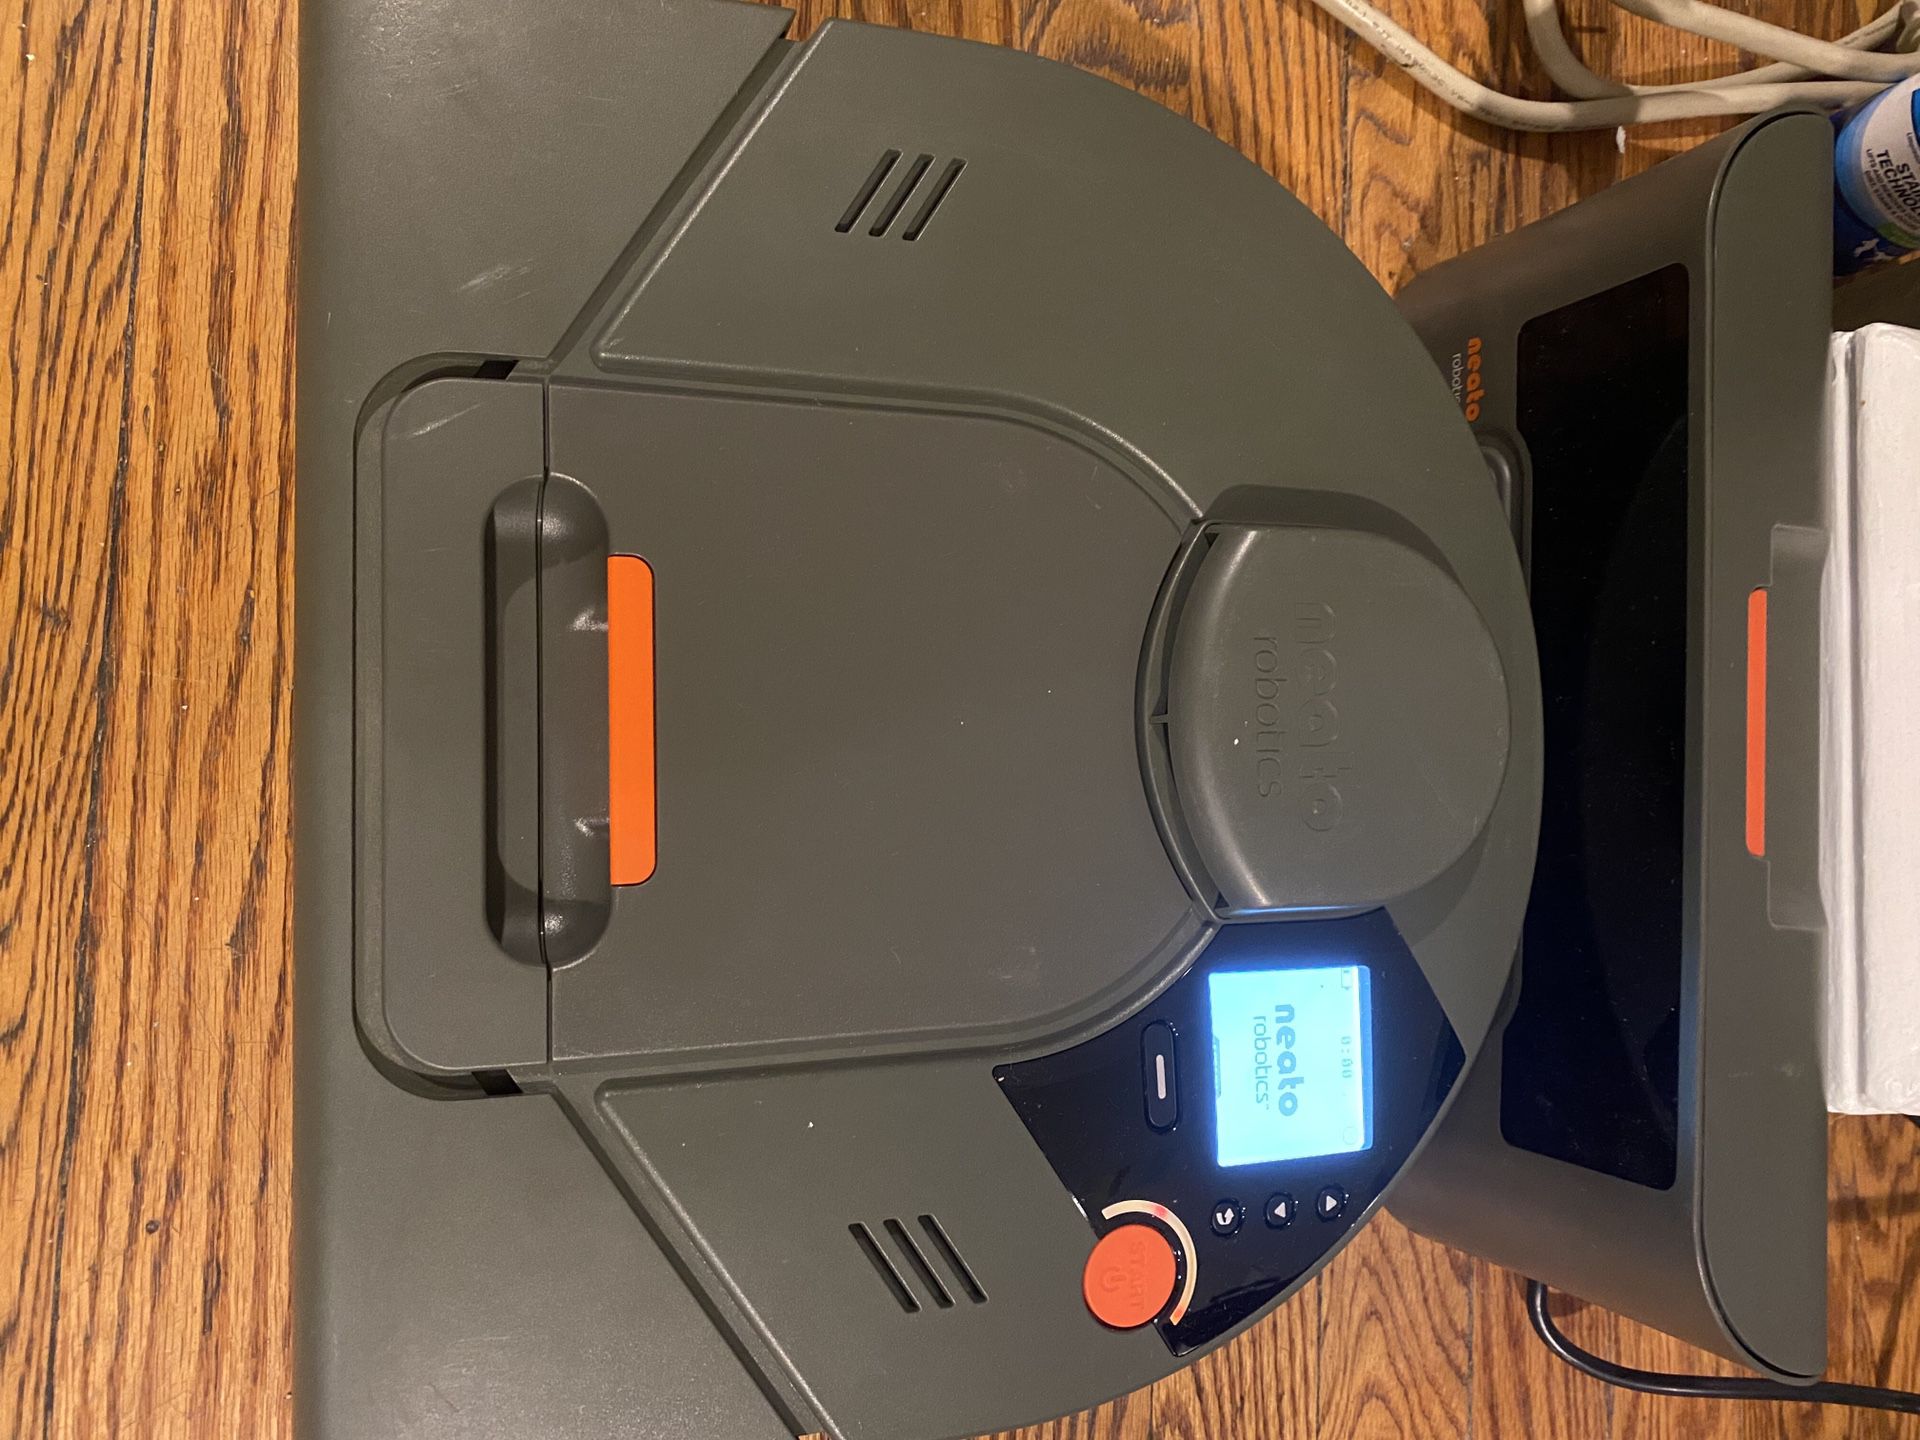 Neato (Roomba-like) automatic vacuum